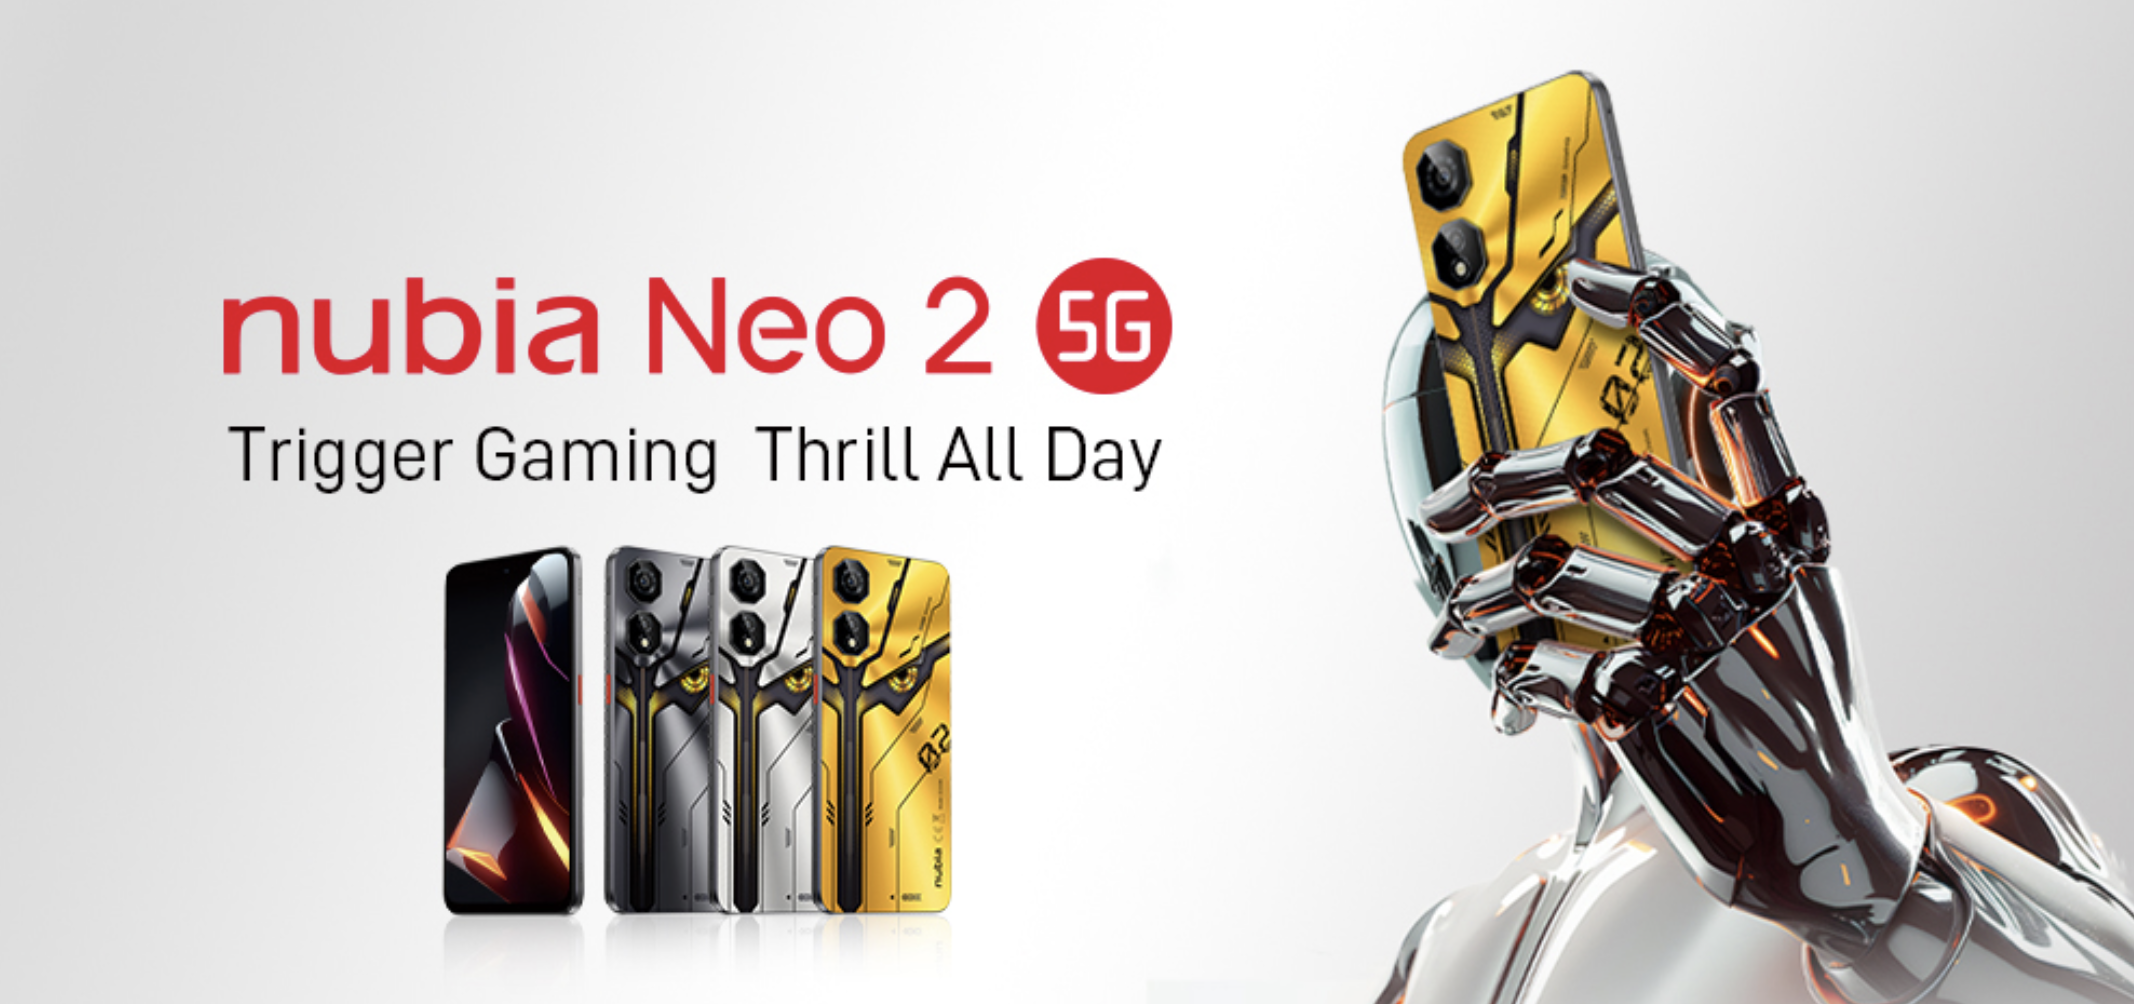 nubia Neo 2 5G: un smartphone para juegos con gatillos laterales, pantalla de 120 Hz y batería de 6000 mAh por 199 dólares